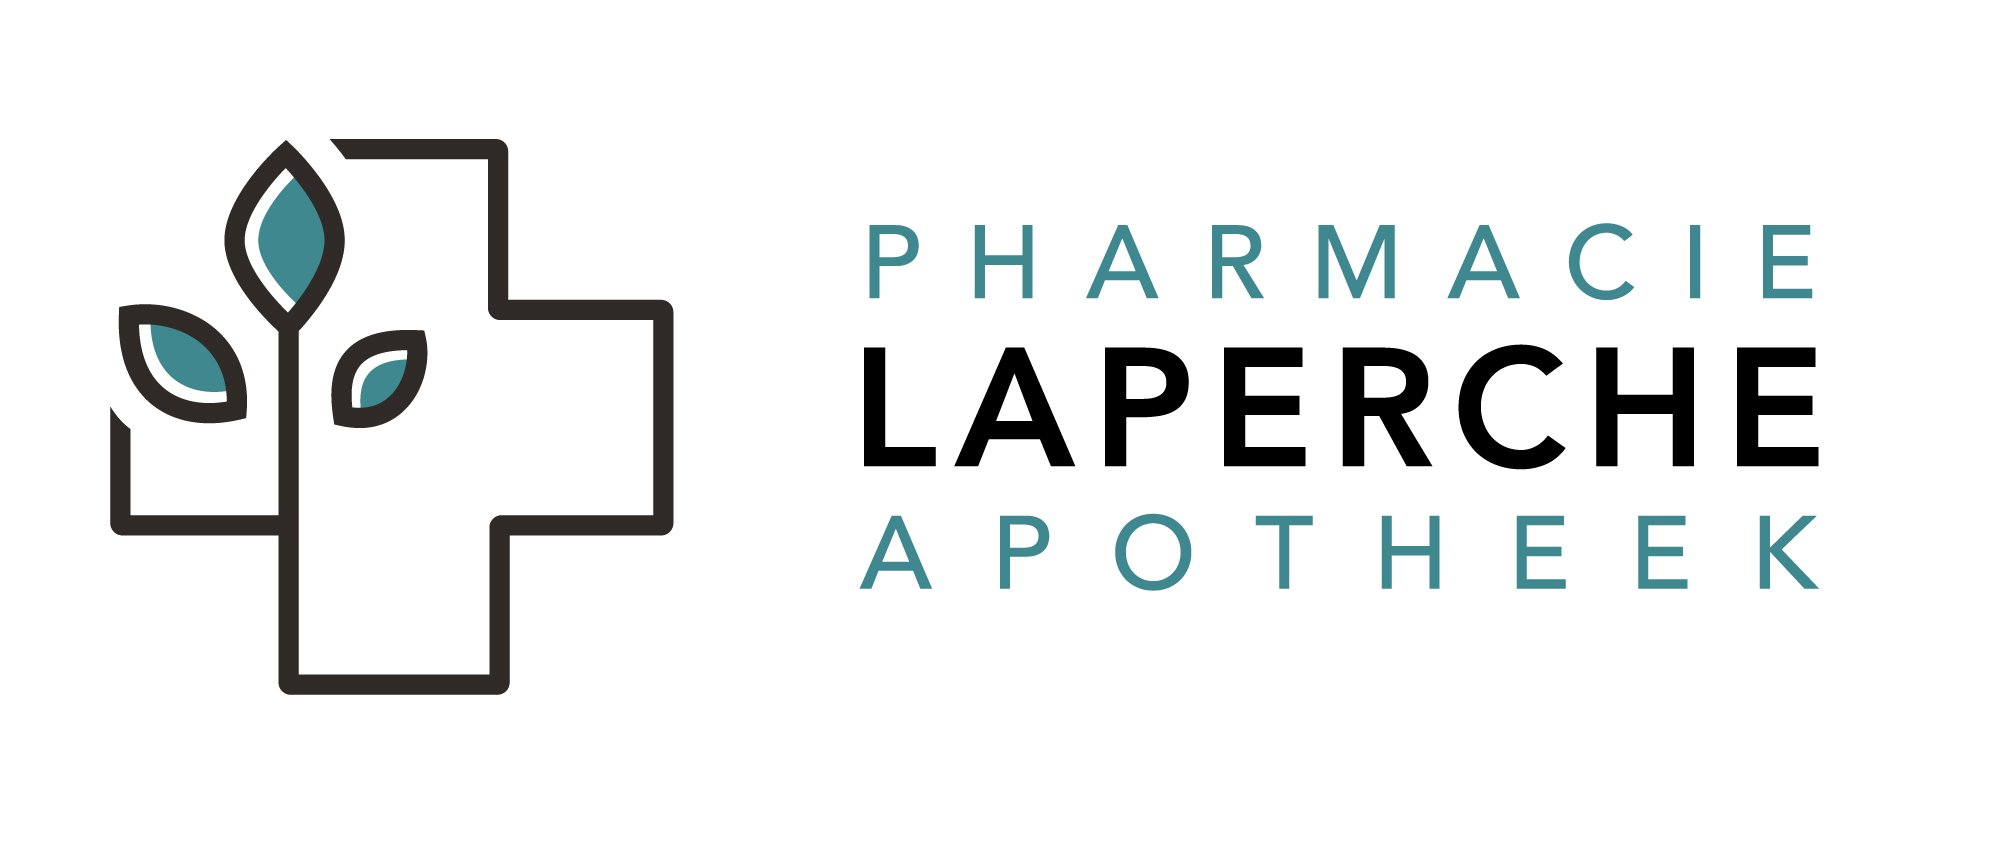 Pharmacie Laperche